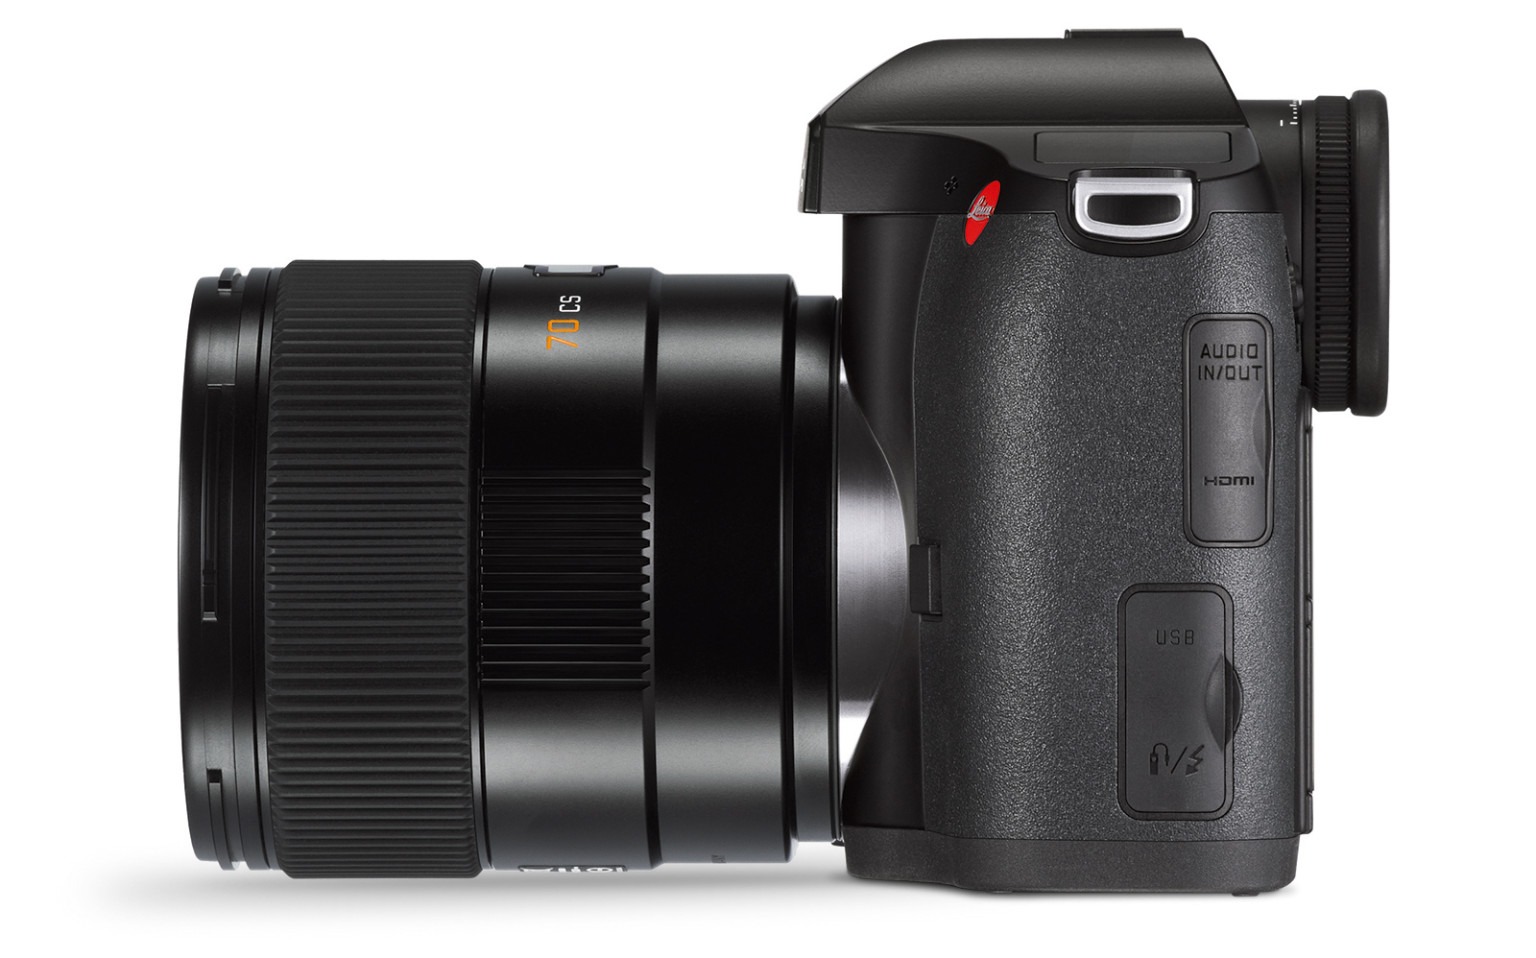 Leica ra mắt S3: máy ảnh DSLR Medium Format 64MP, có hỗ trợ quay video 4K